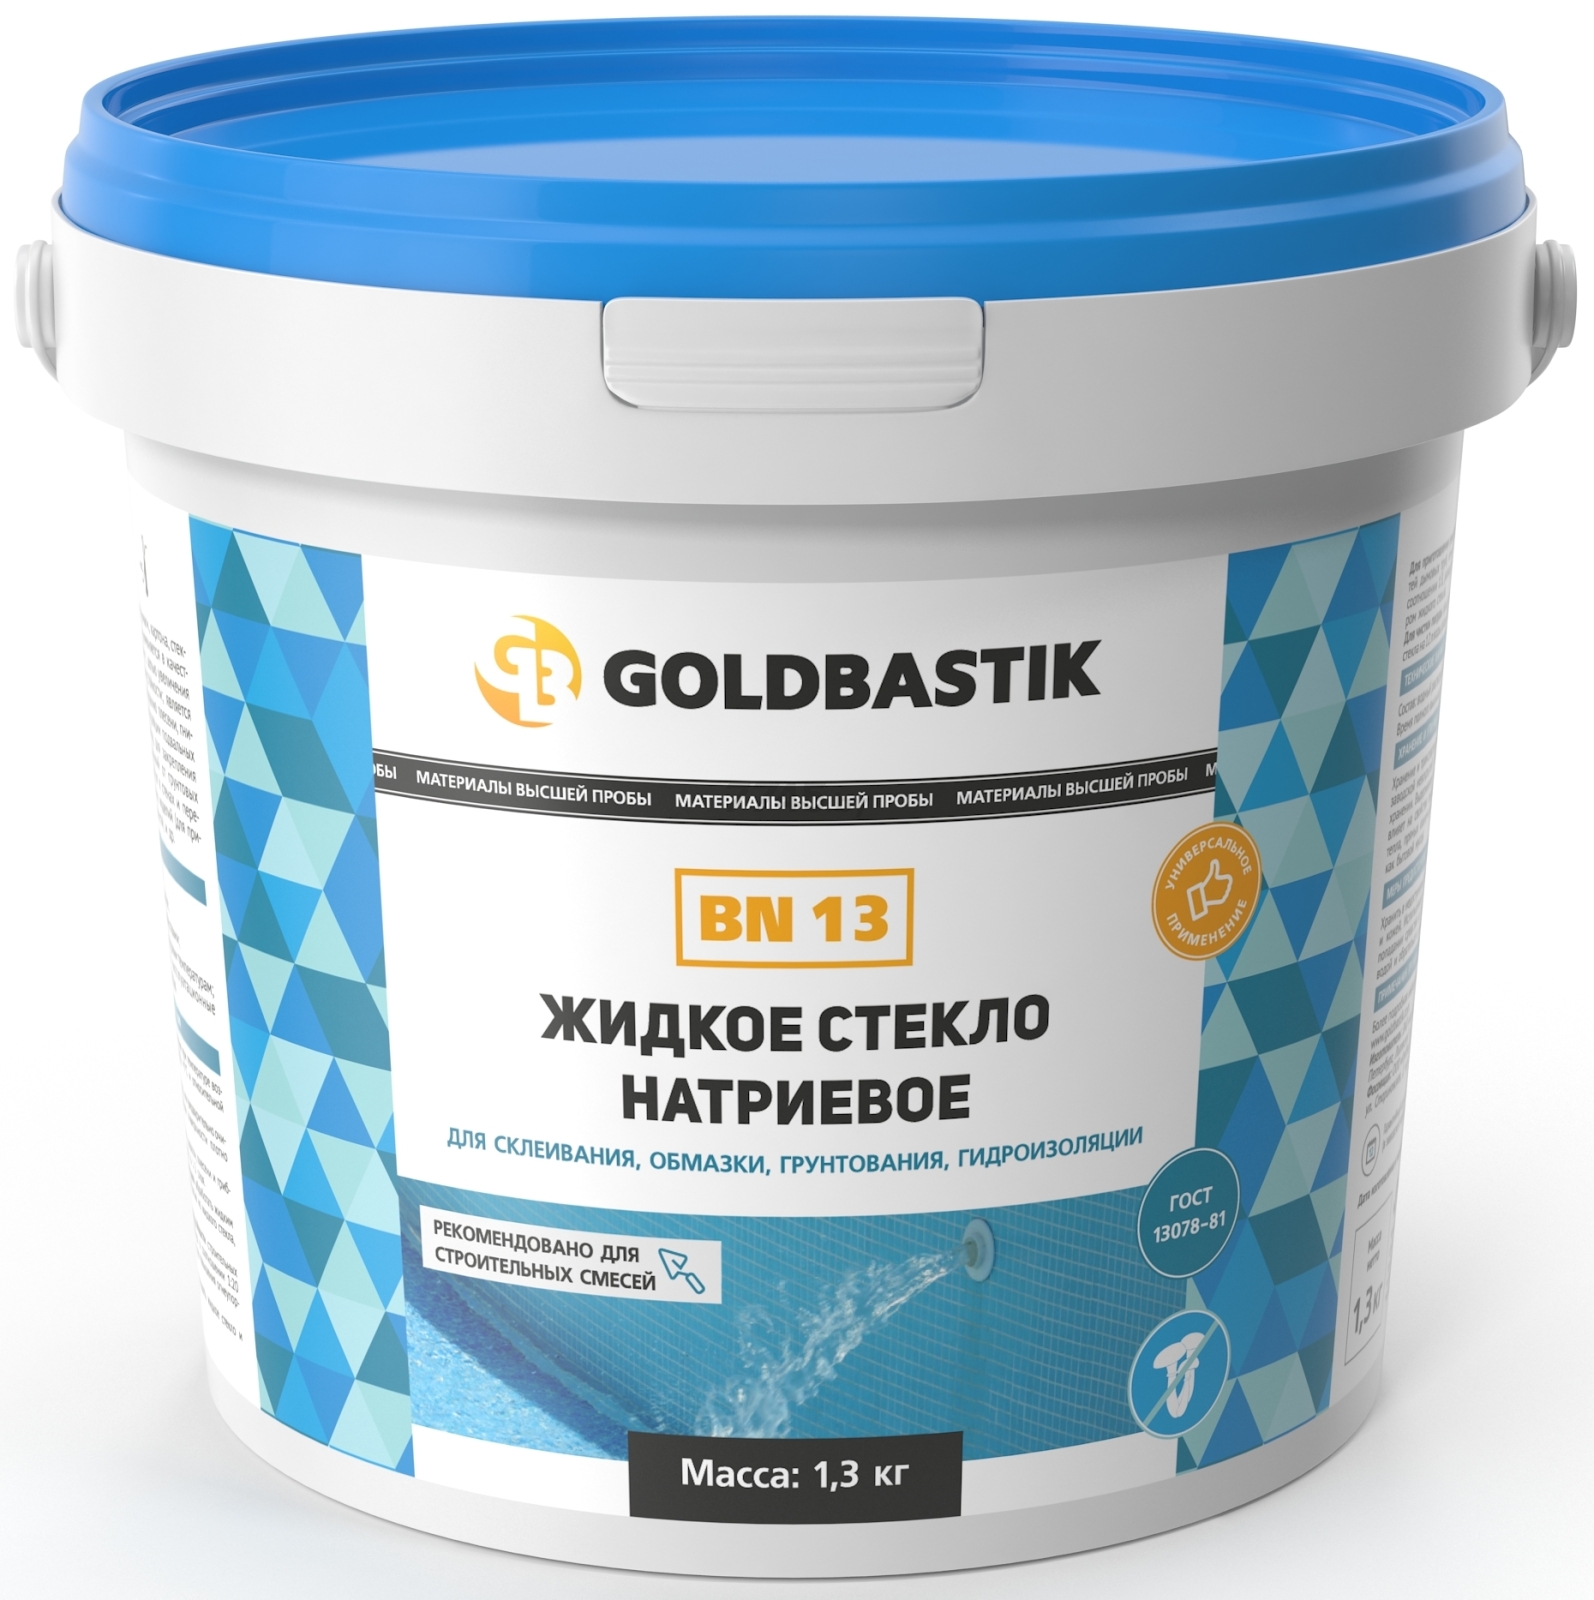 Стекло натриевое жидкое GOLDBASTIK 1,3 кг (BN 13)